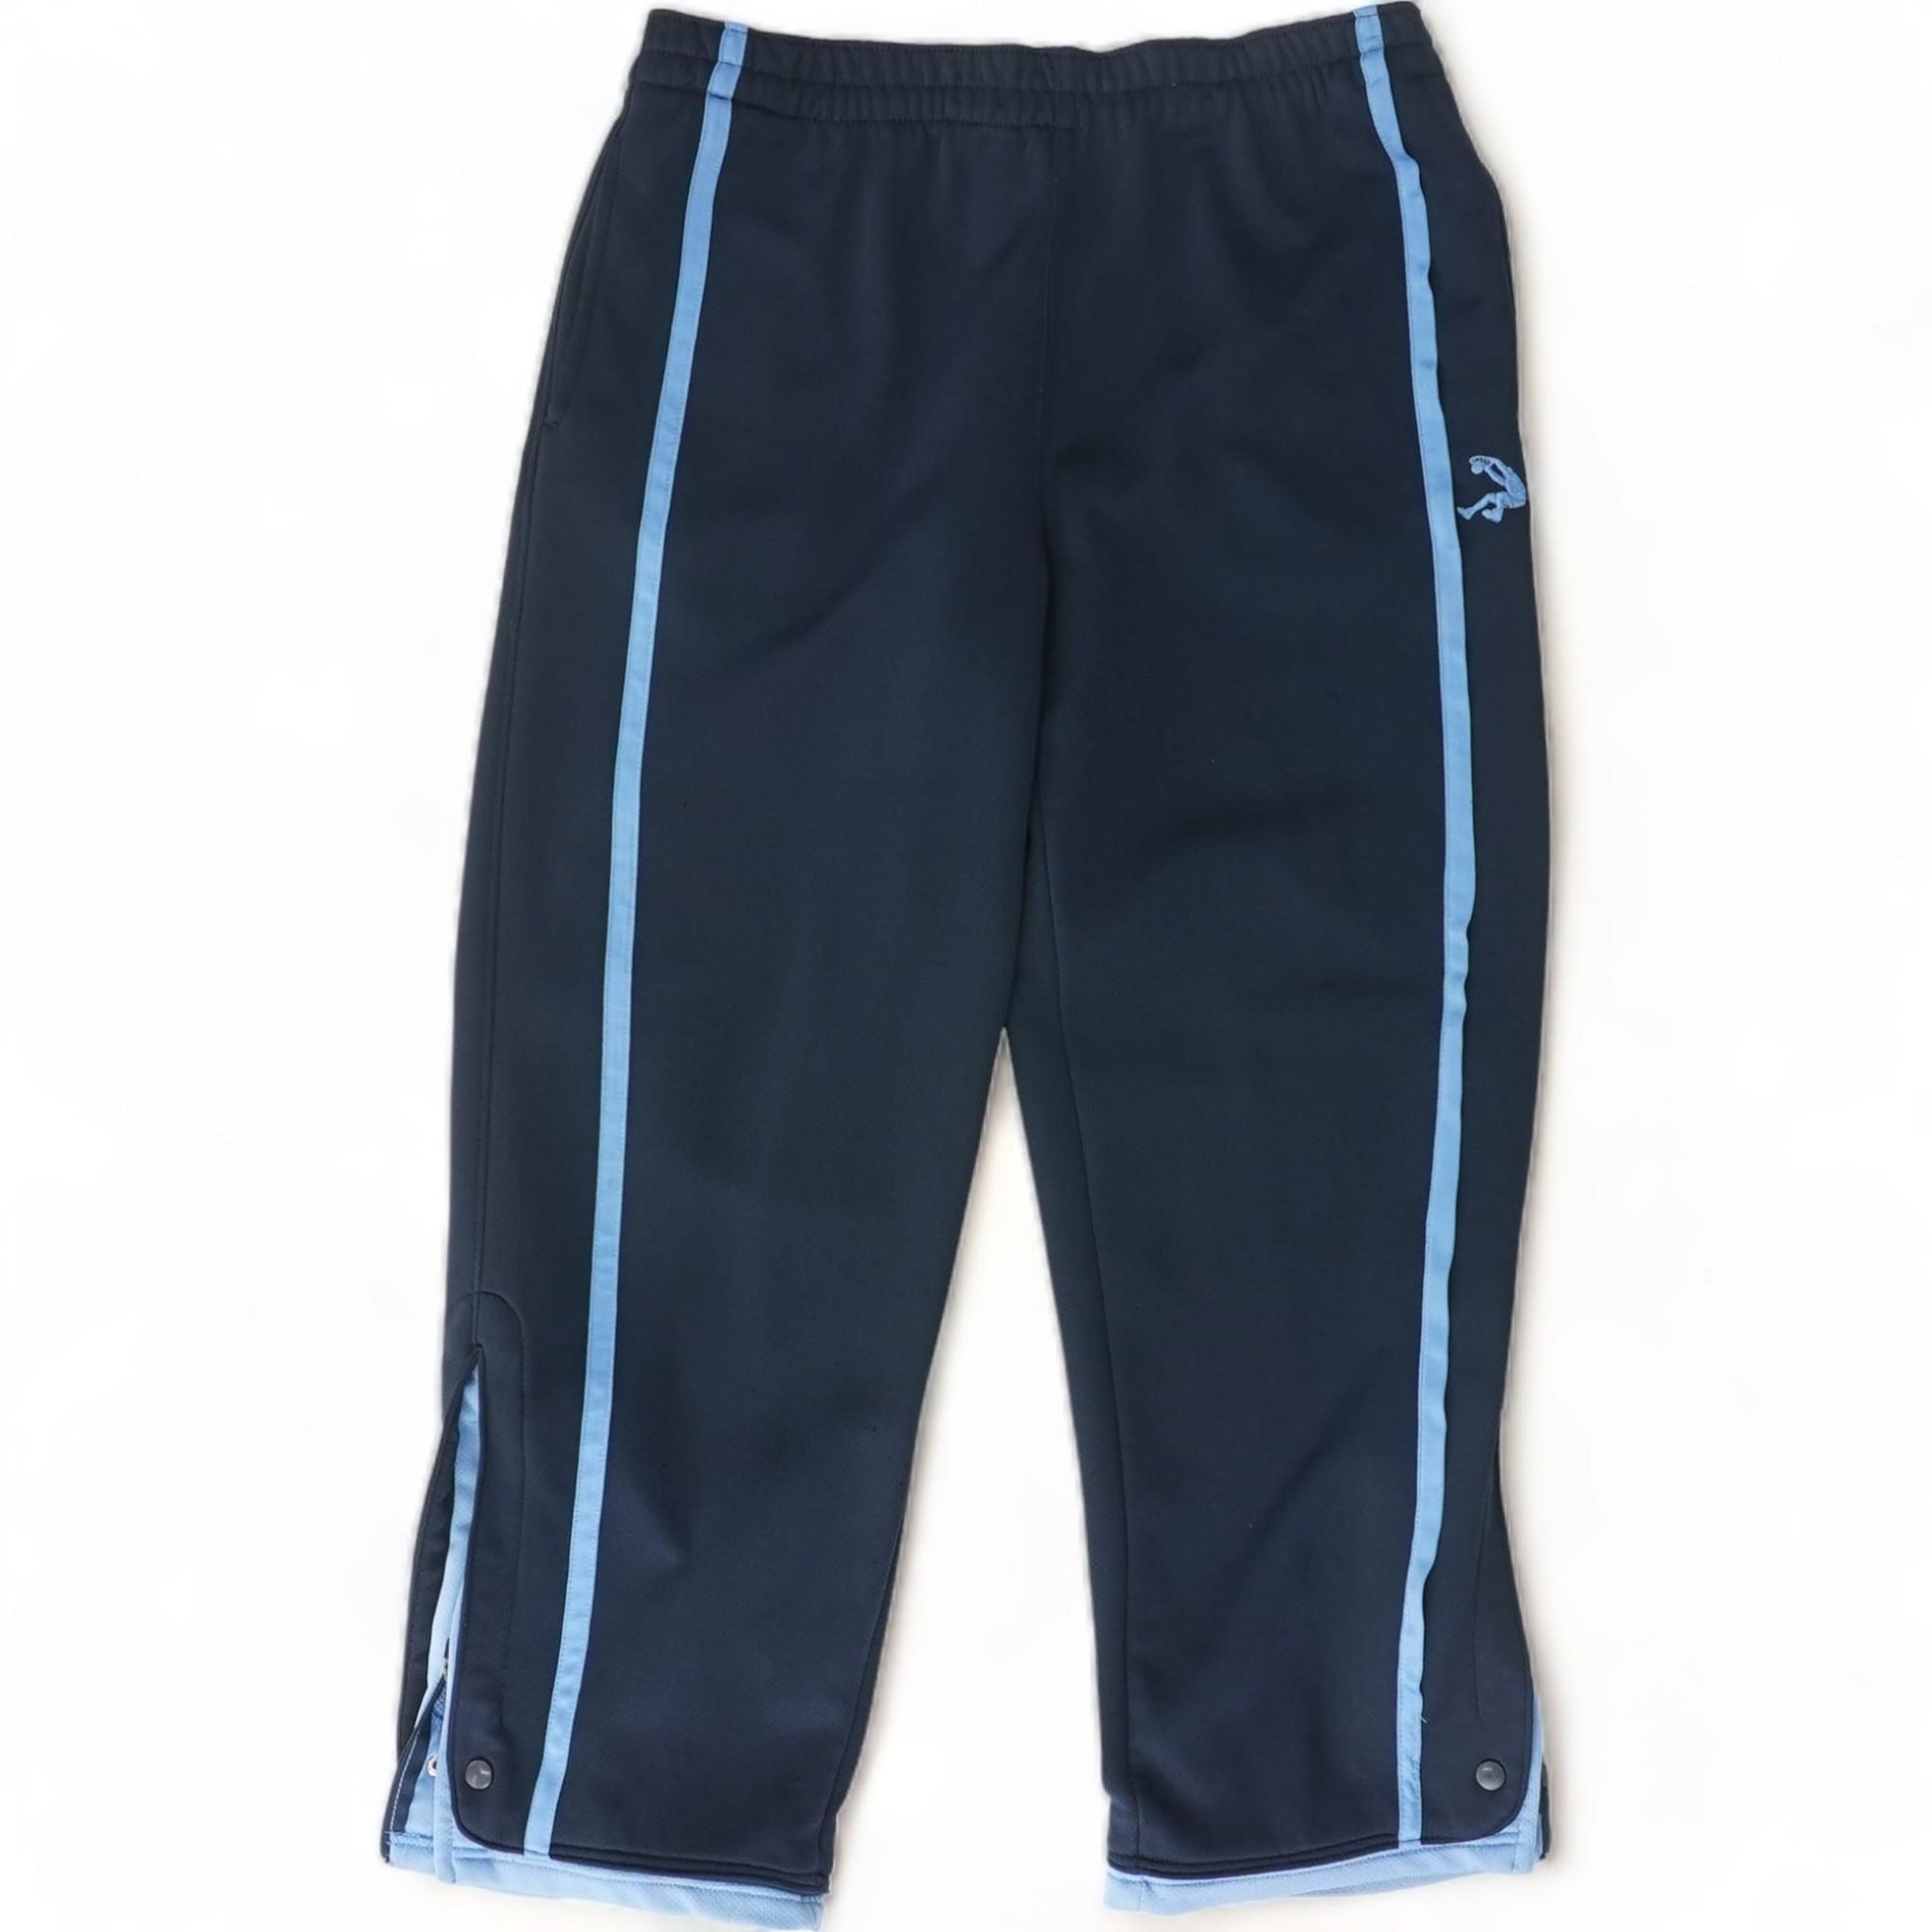 Spyder Blue Active Pants Size L - 71% off